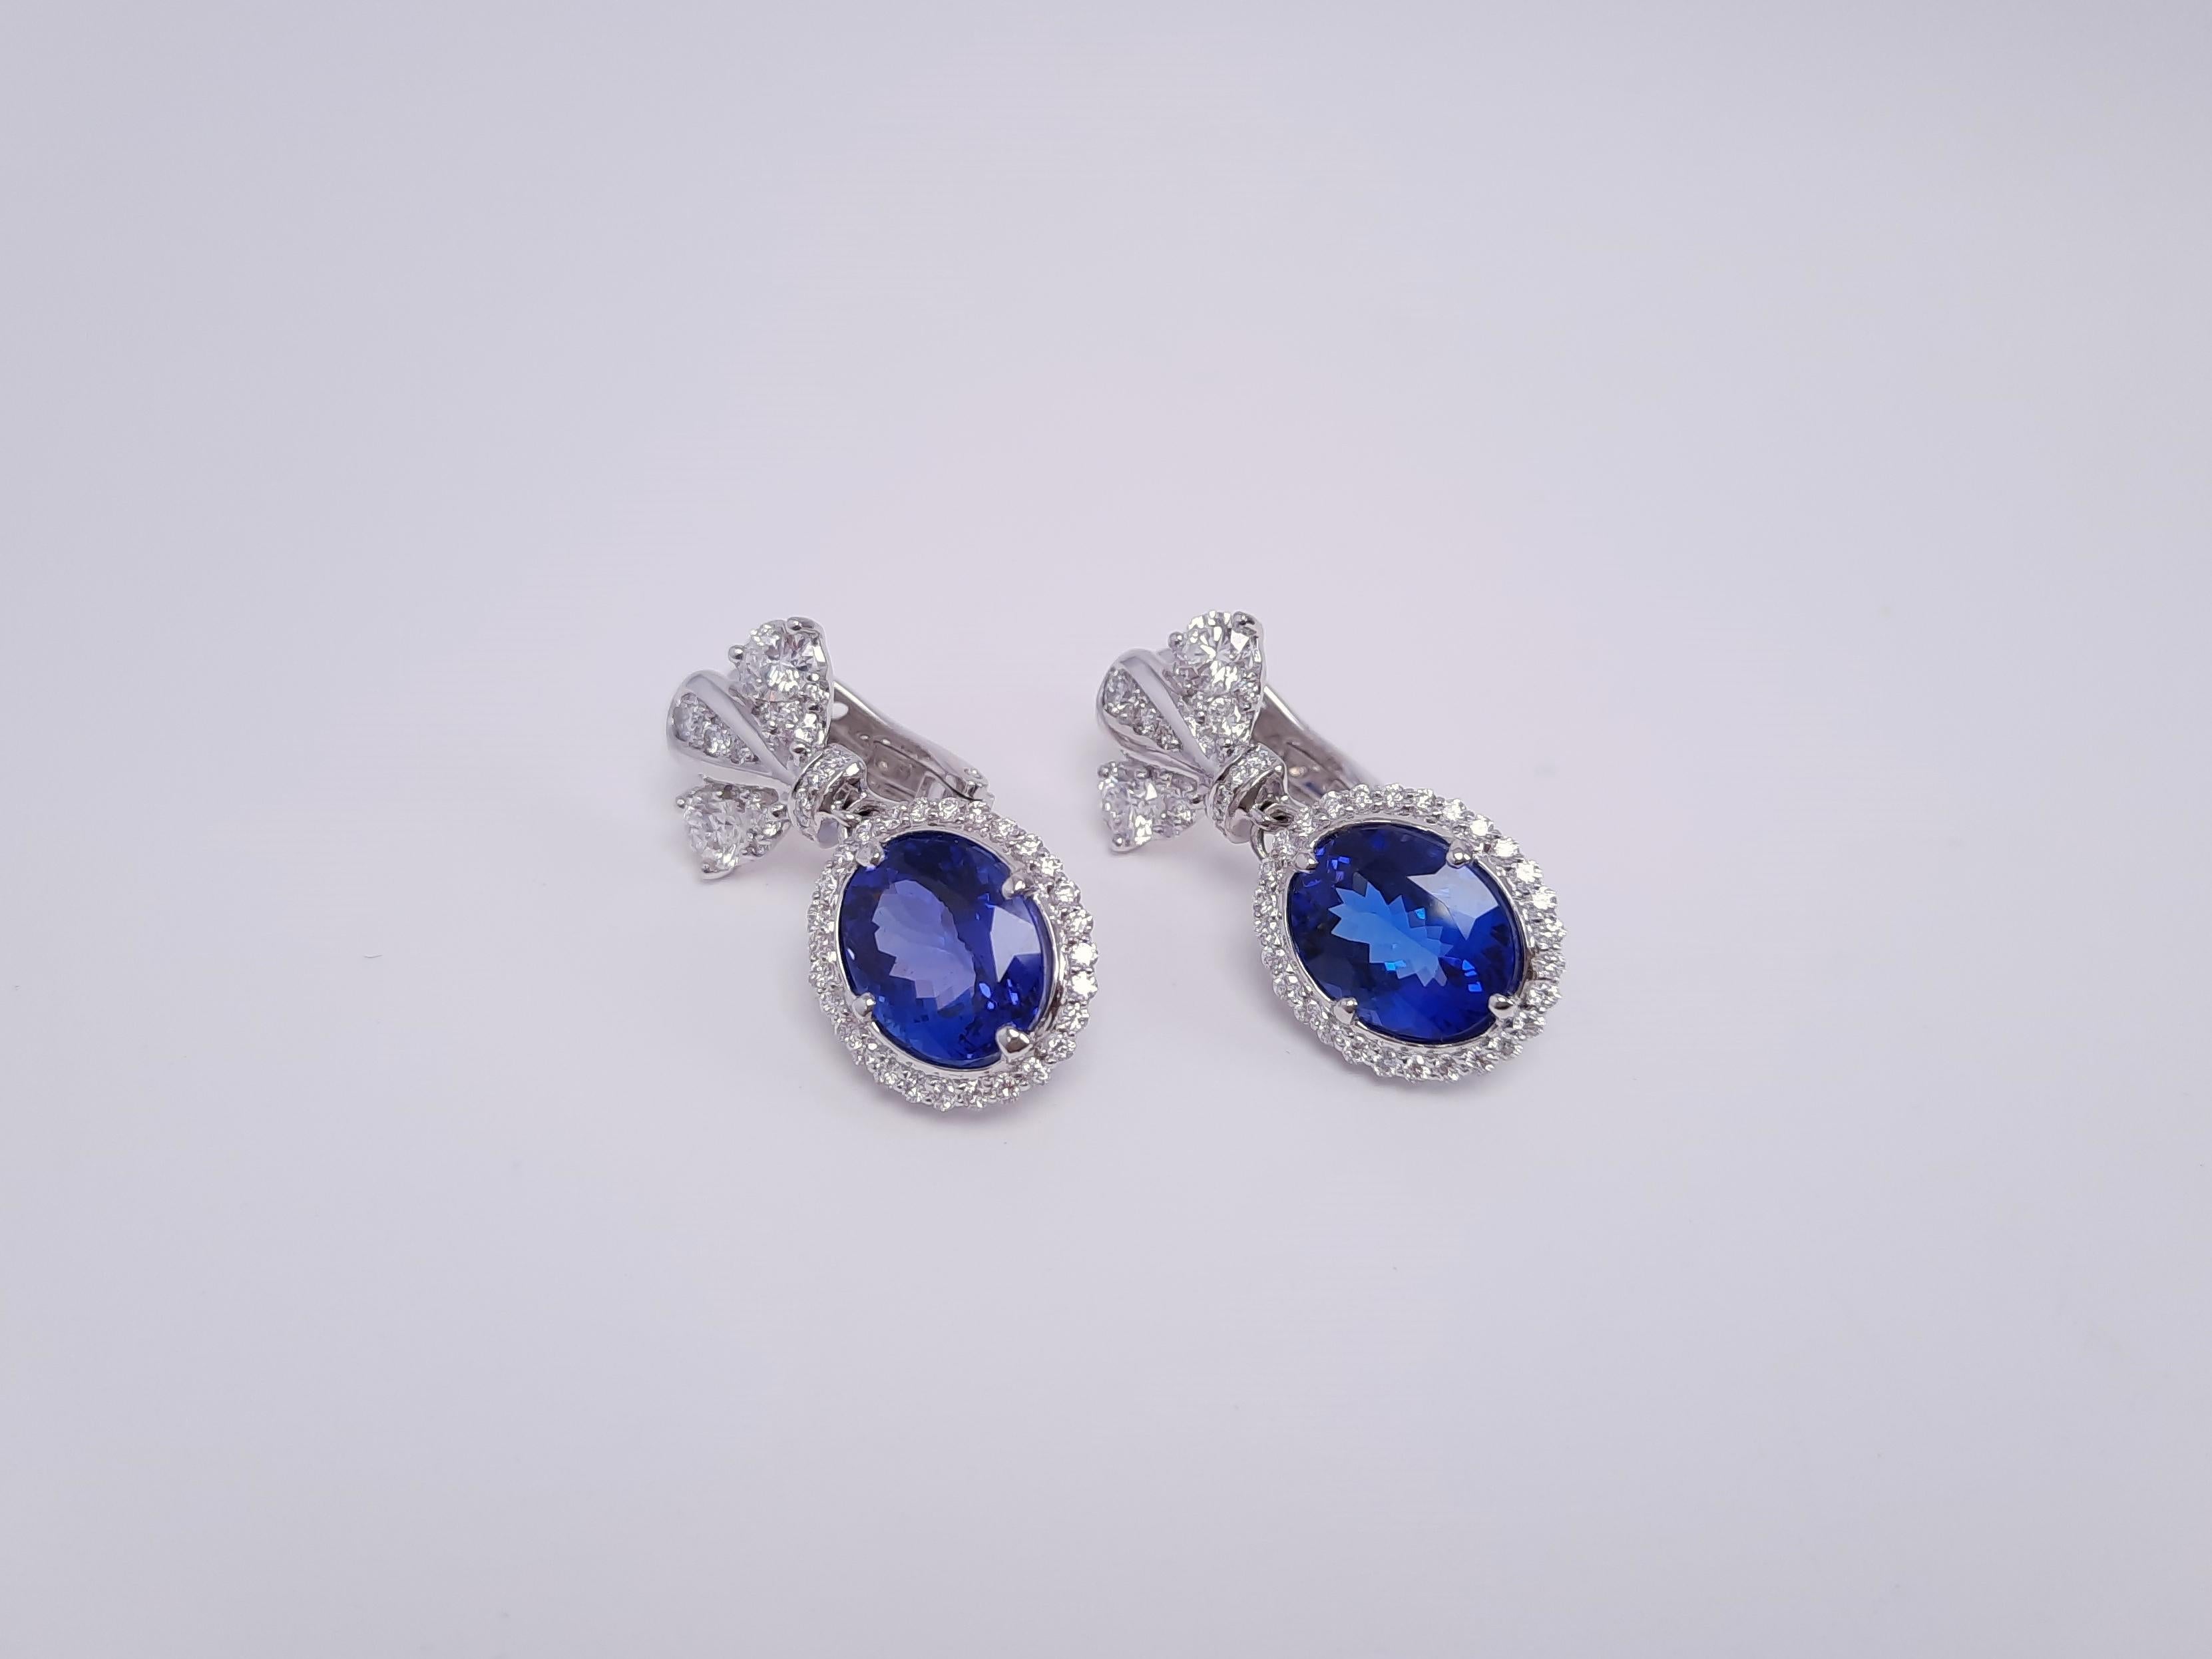 Die eleganten und klassischen Ohrringe aus Diamanten und tiefen Tansaniten sind von der prächtigen russischen und europäischen Epoche inspiriert. Dediziert der kaiserlichen Größe, dem Luxus, der Schönheit und dem edlen Streben, werden die